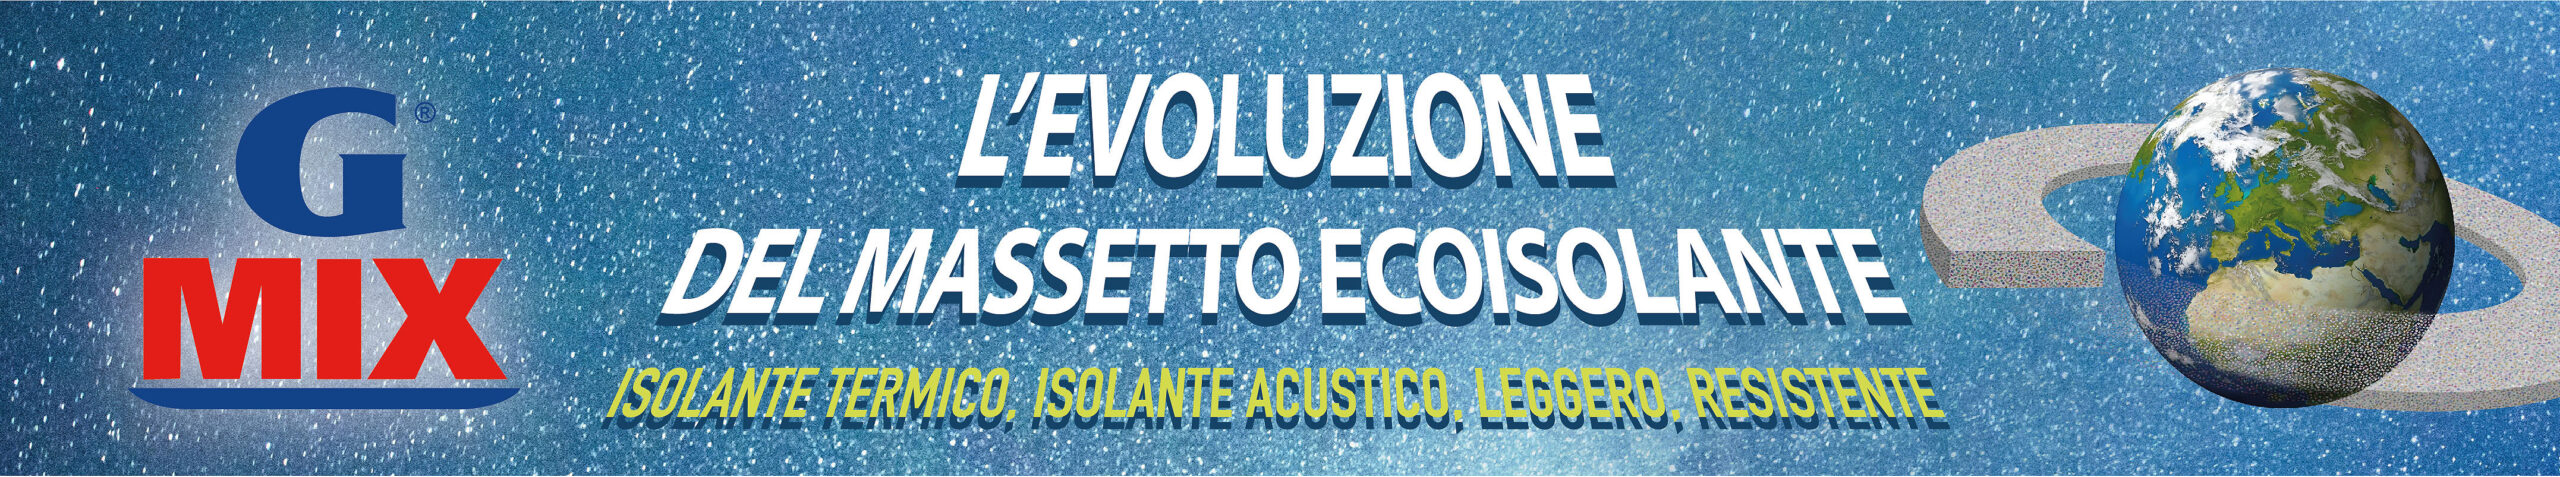 GMIX L'EVOLUZIONE DEL MASSETTO ECOISOLANTE ISOLANTE TERMICO, ISOLANTE ACUSTICO; LEGGERO; RESISTENTE